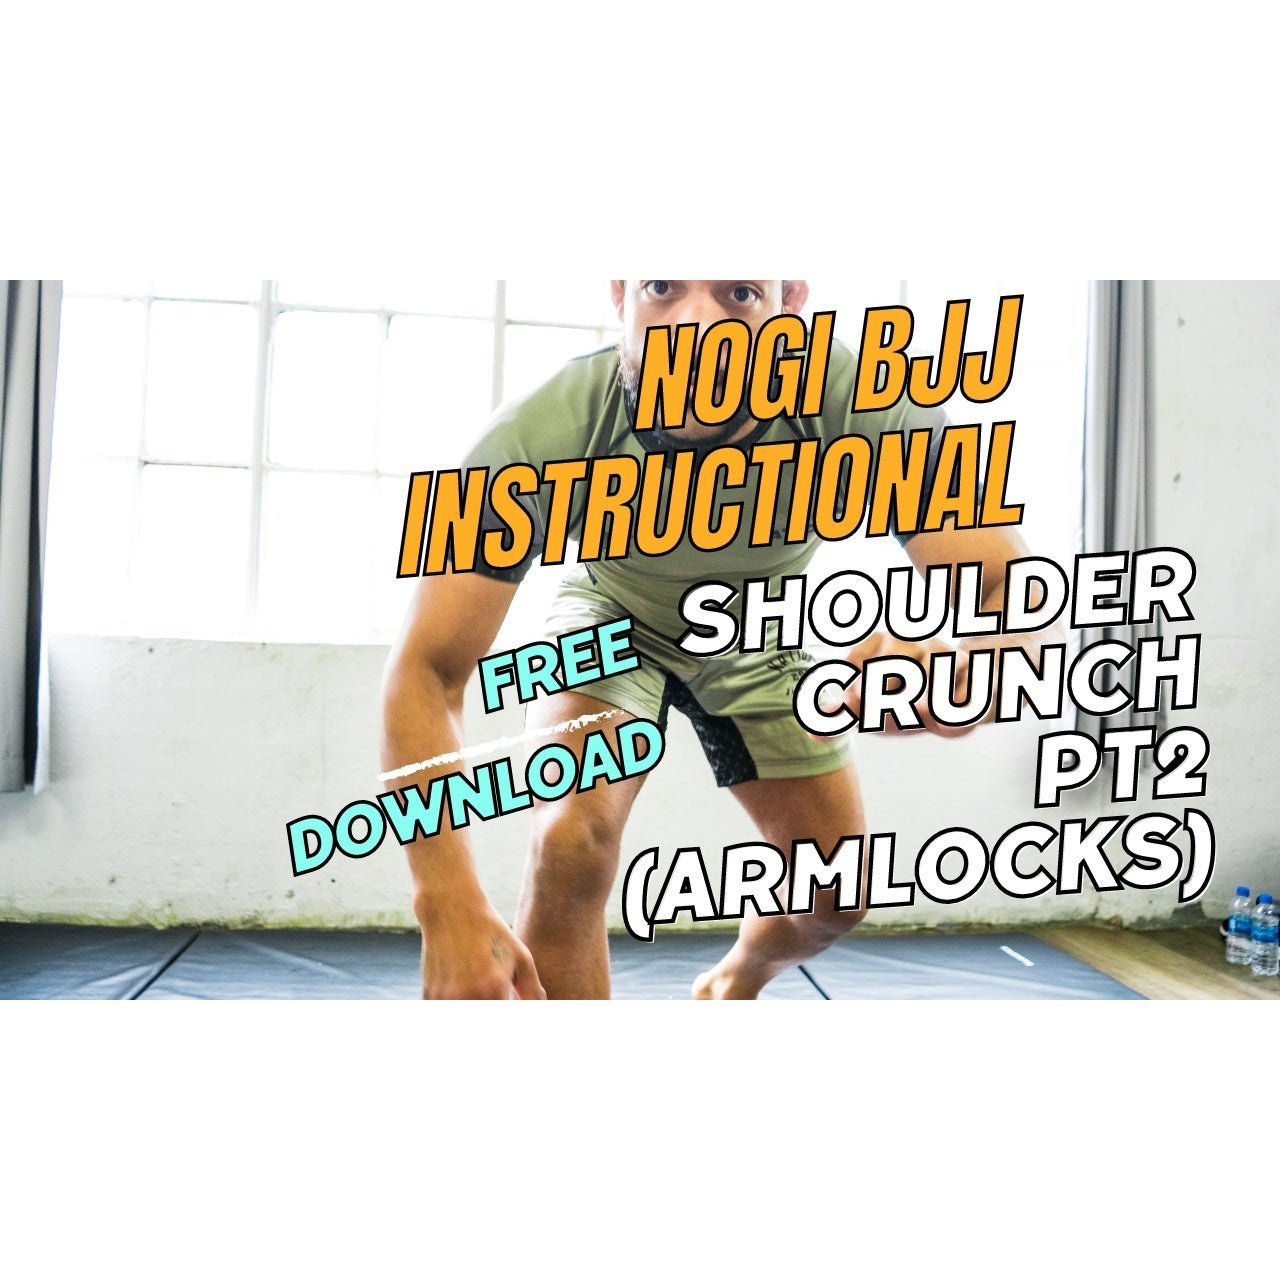 NOGI BJJ INSTRUCTIONAL - Shoulder Crunch pt2 armlocks - Free Download